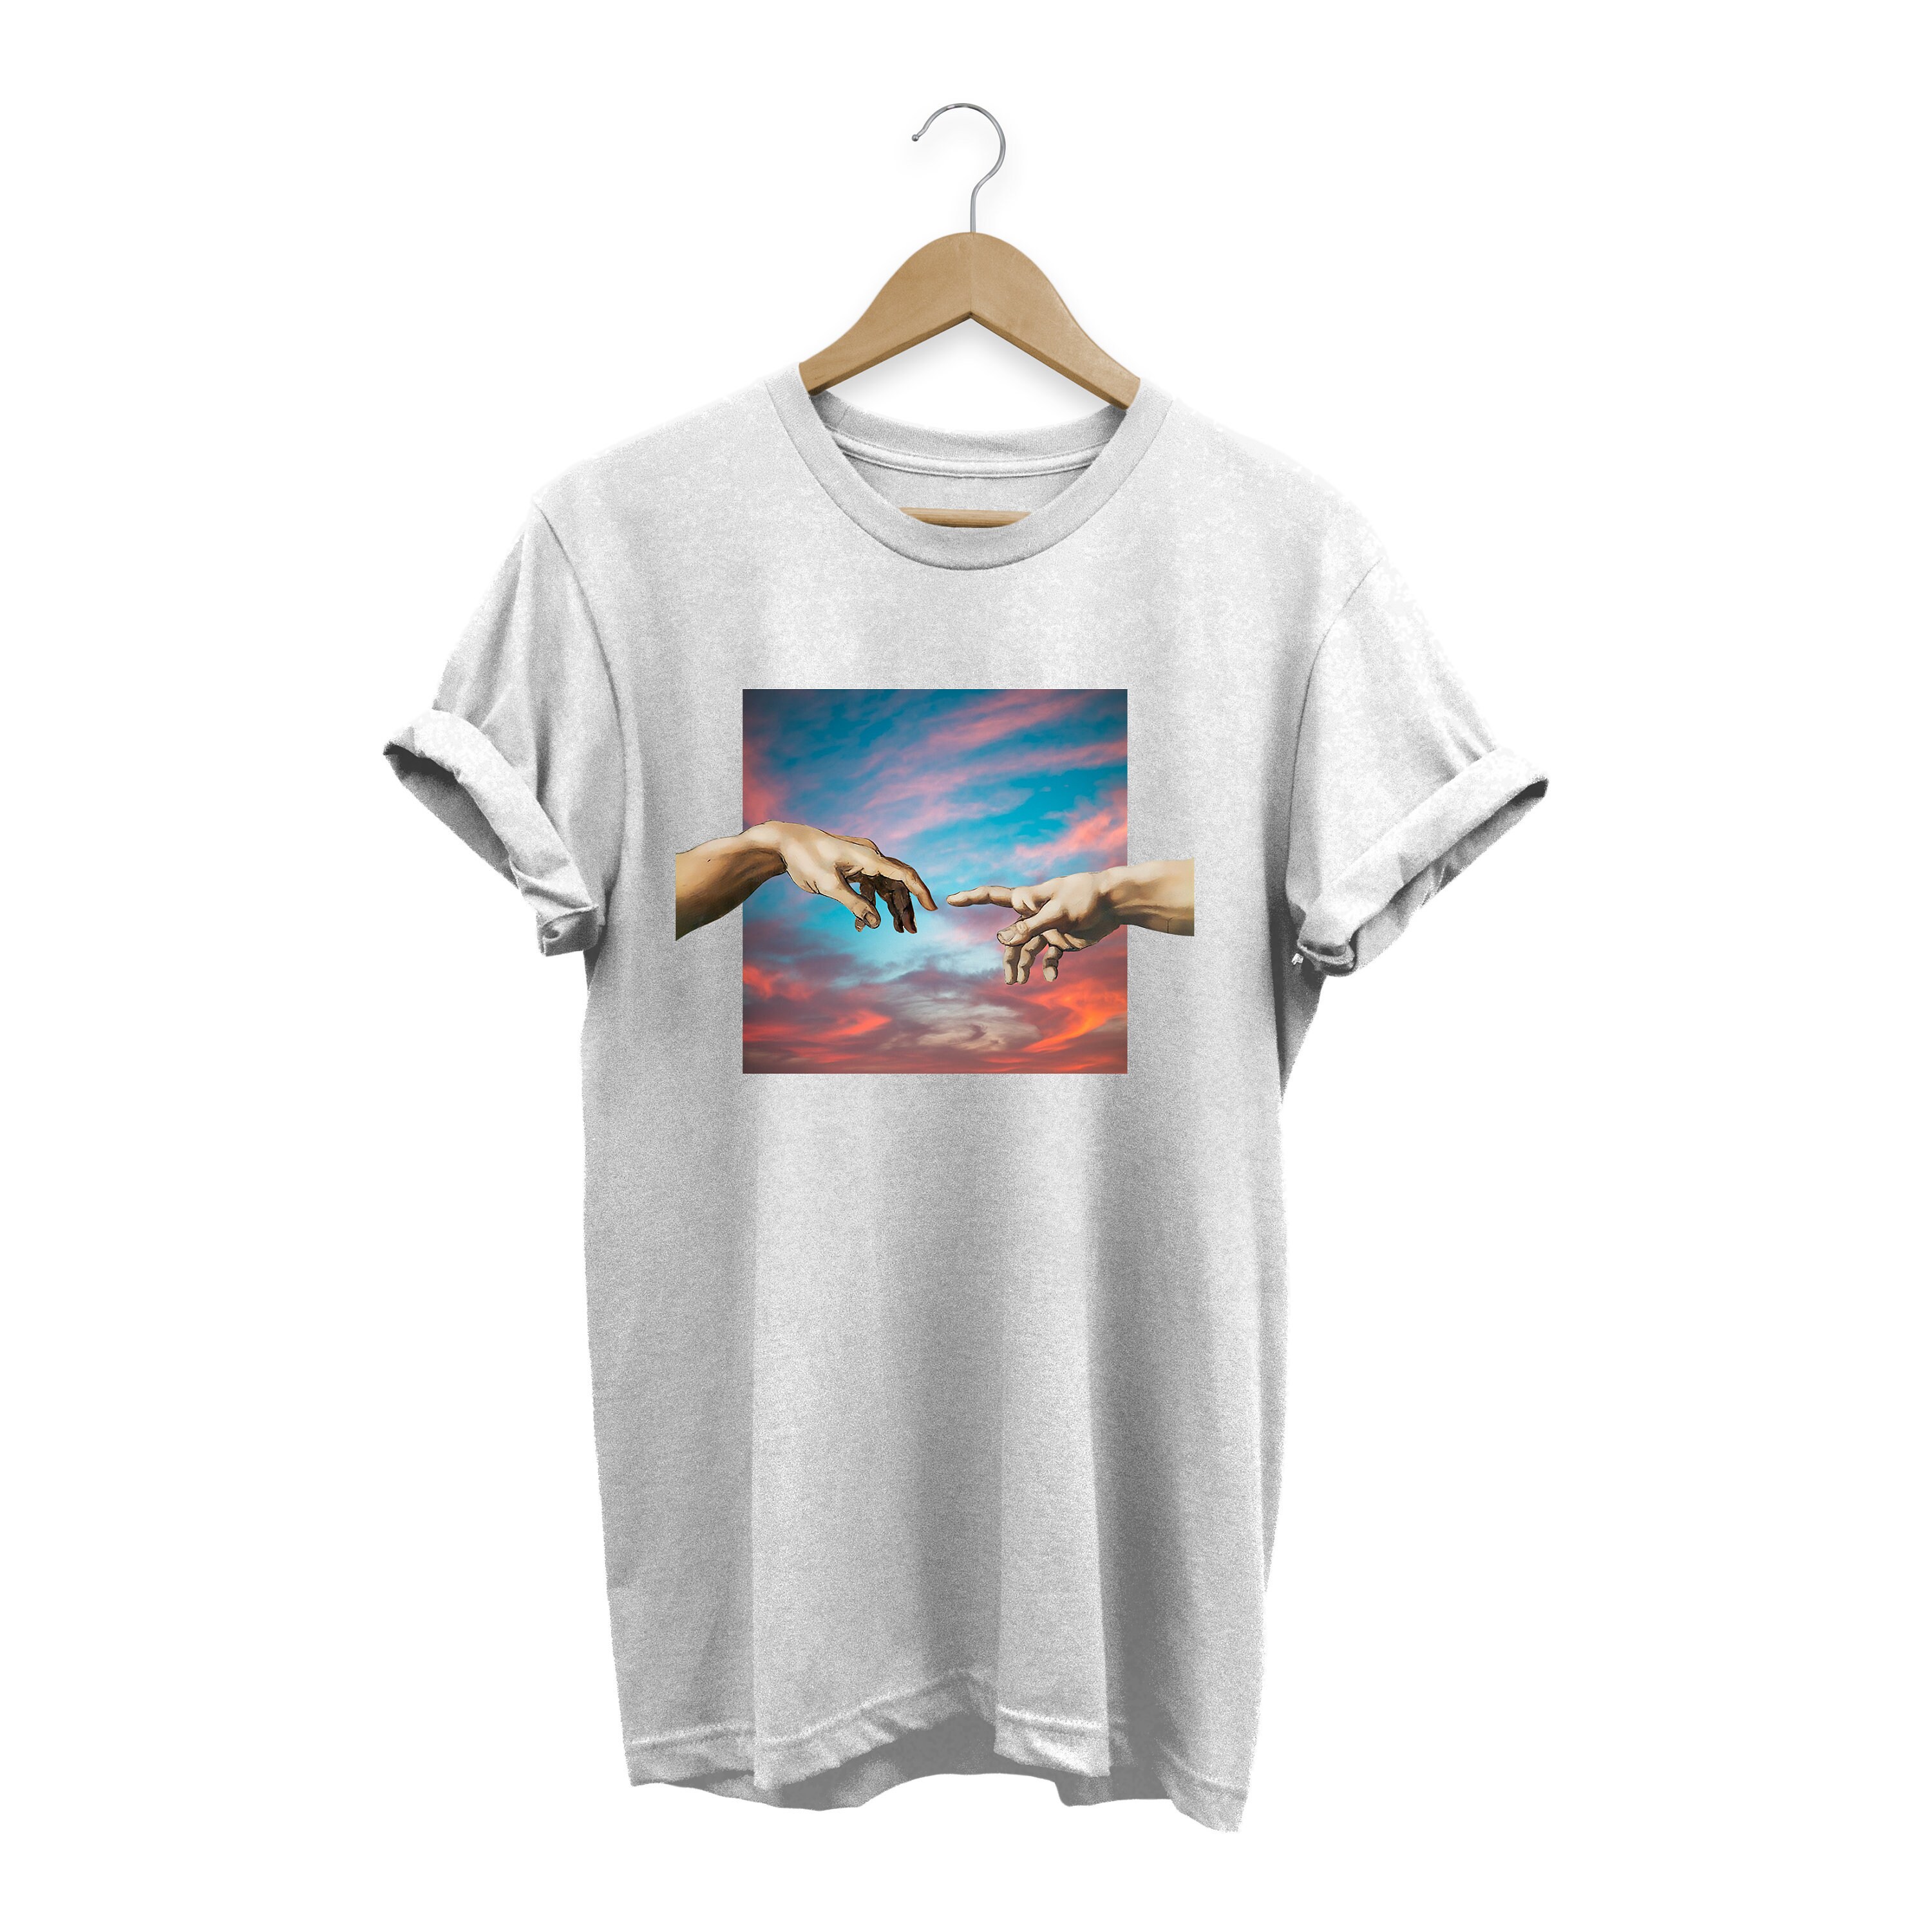 Creation of Adam shirt Michelangelo shirt Renaissance shirt | Etsy